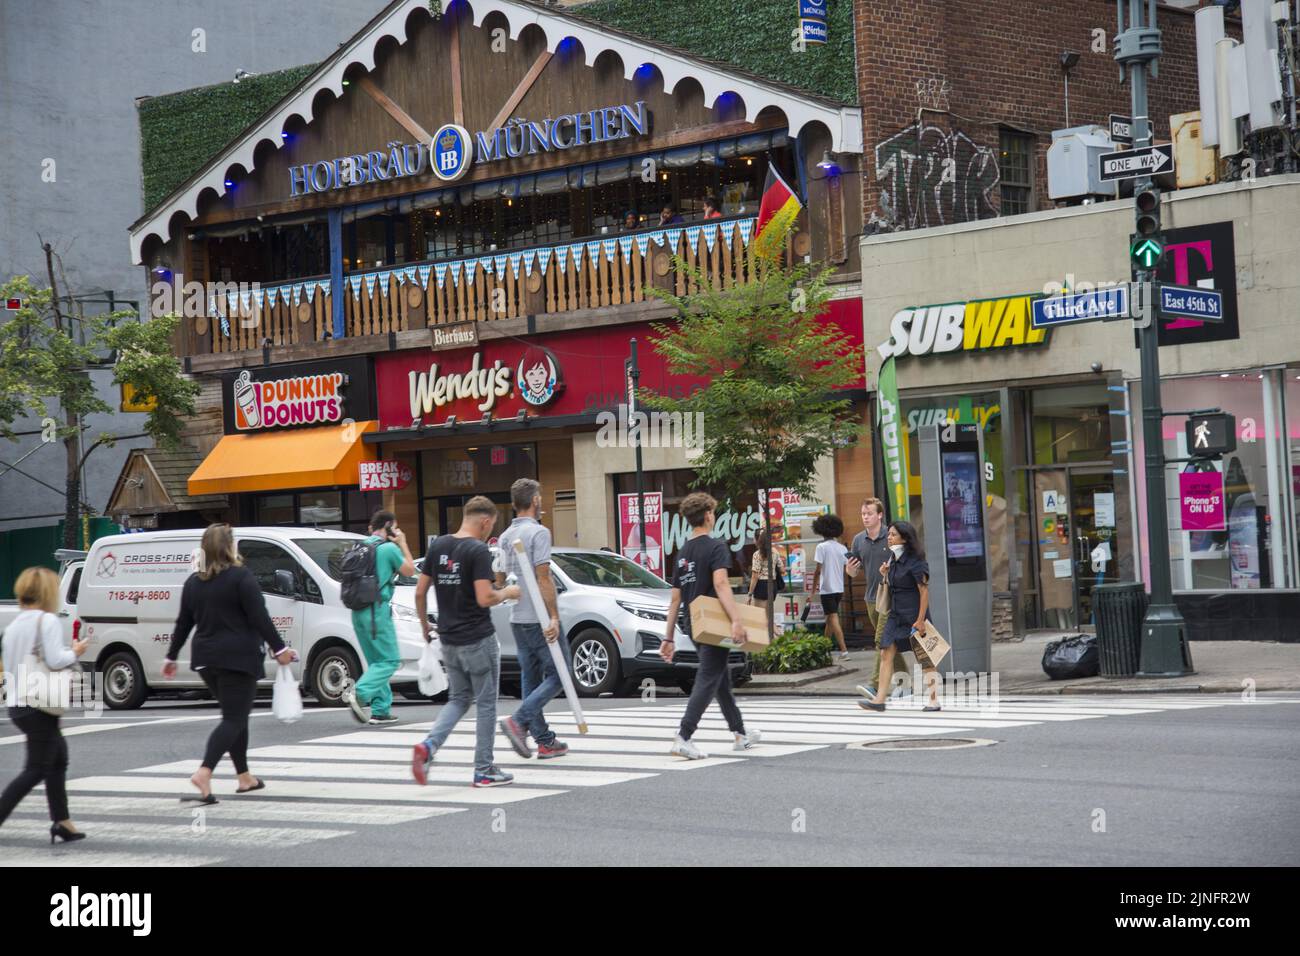 Las franquicias corporativas de comida rápida son ubicuas en toda la ciudad de Nueva York landscape.3rd Avenue y 45th Street, Midtown, Manhattan. Foto de stock